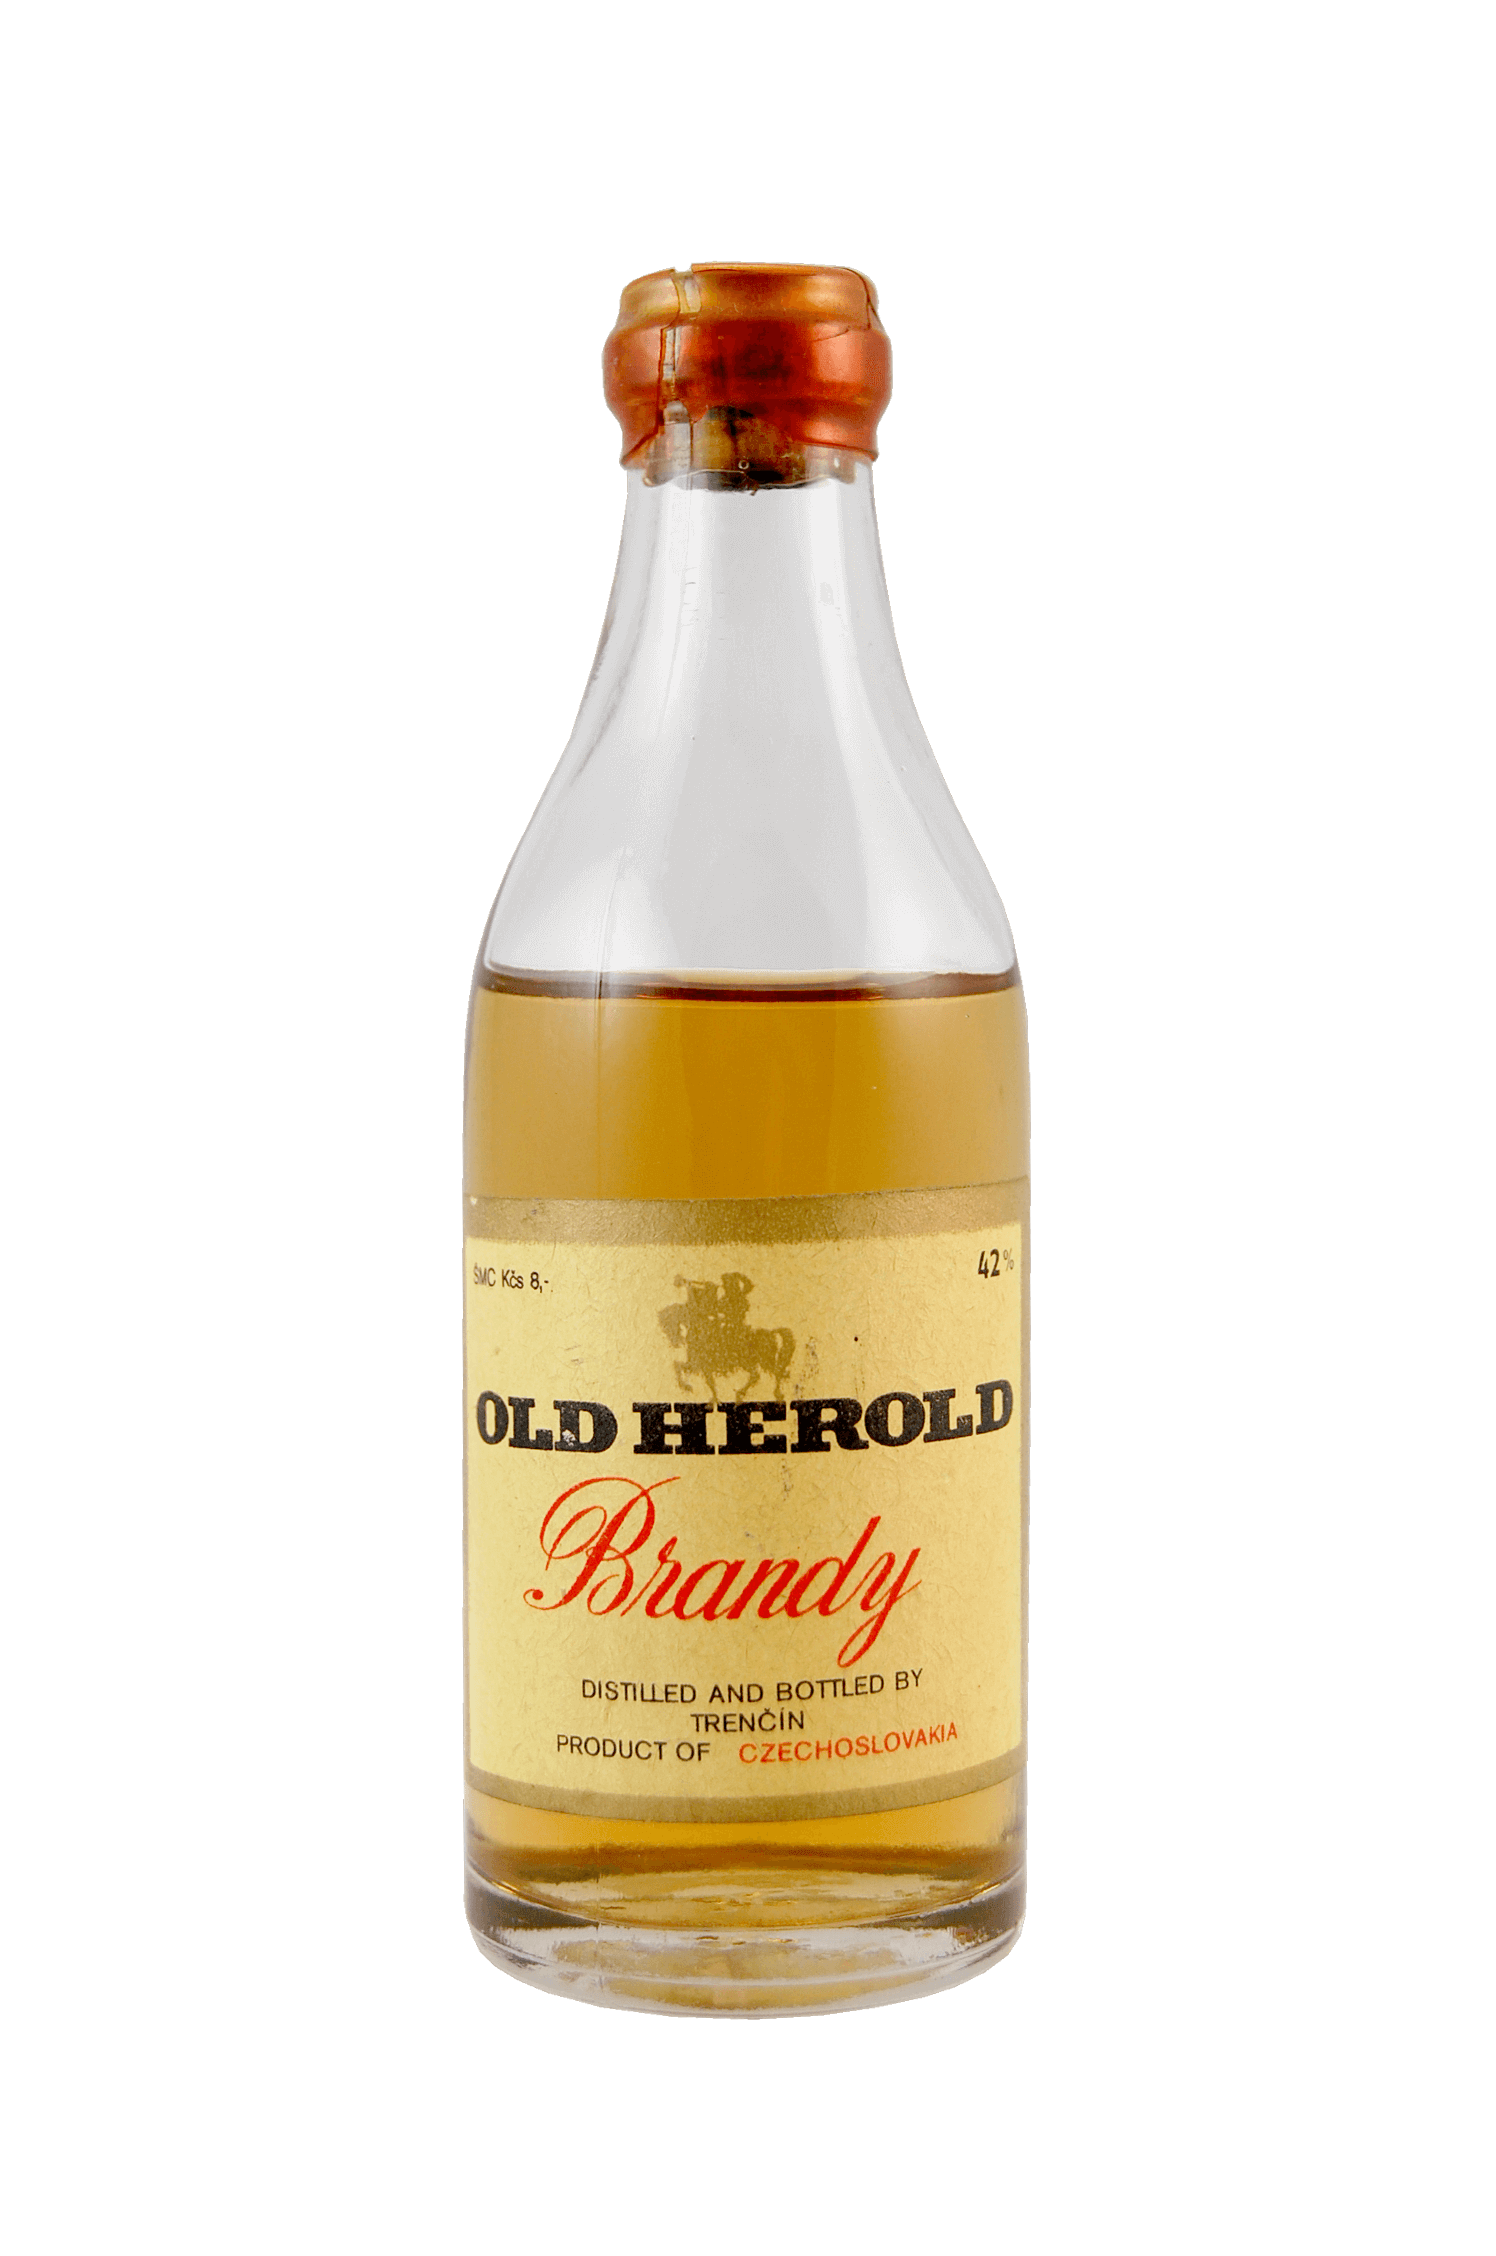 Old Herold Brandy